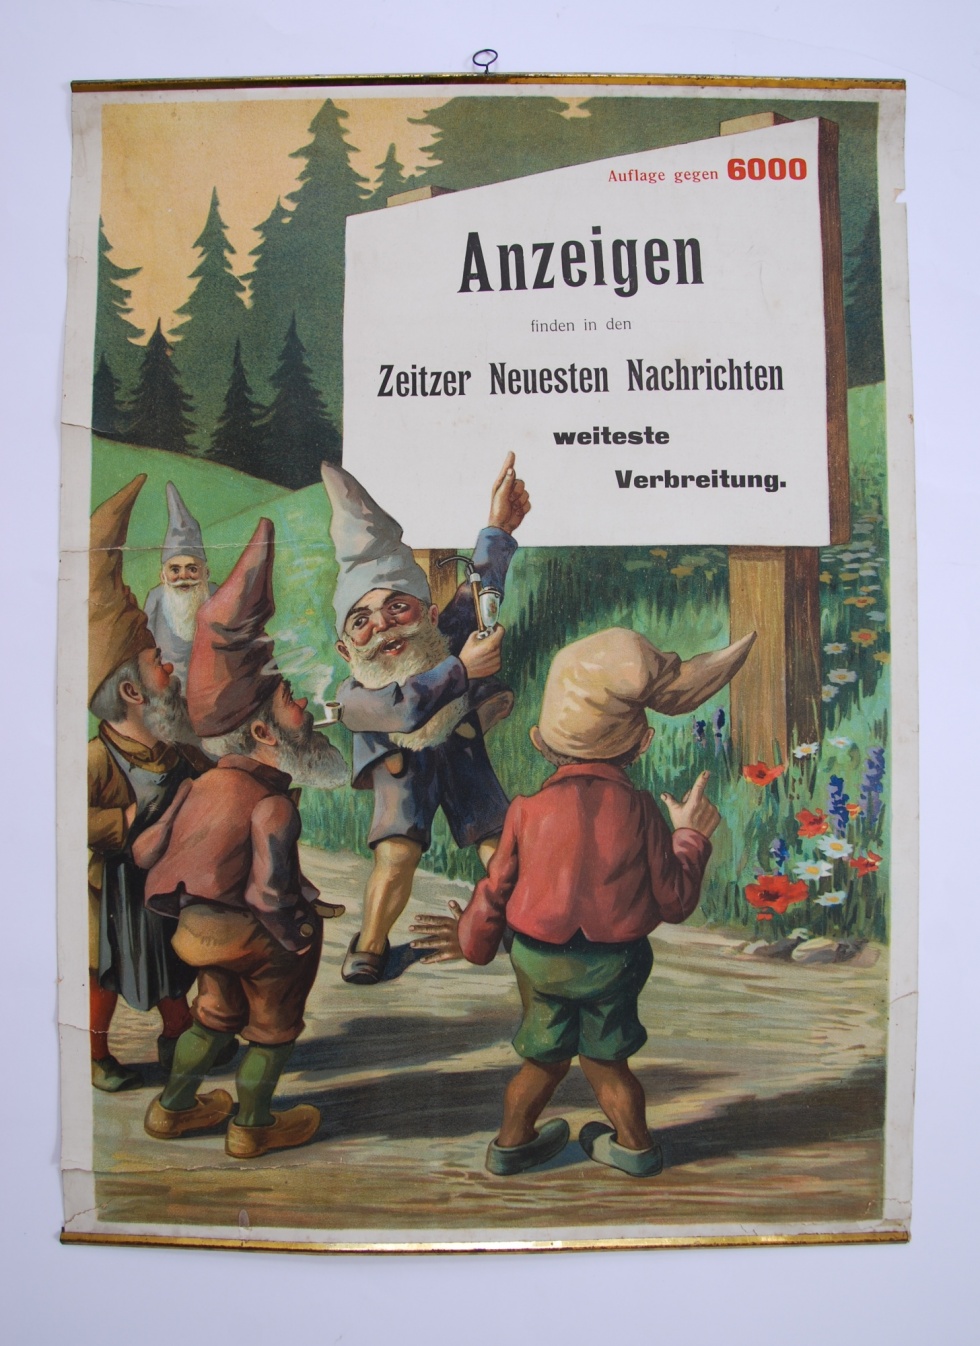 Werbeplakat für Anzeigen in den Zeitzer Neueusten Nachrichten (Museum Schloss Moritzburg Zeitz CC BY-NC-SA)